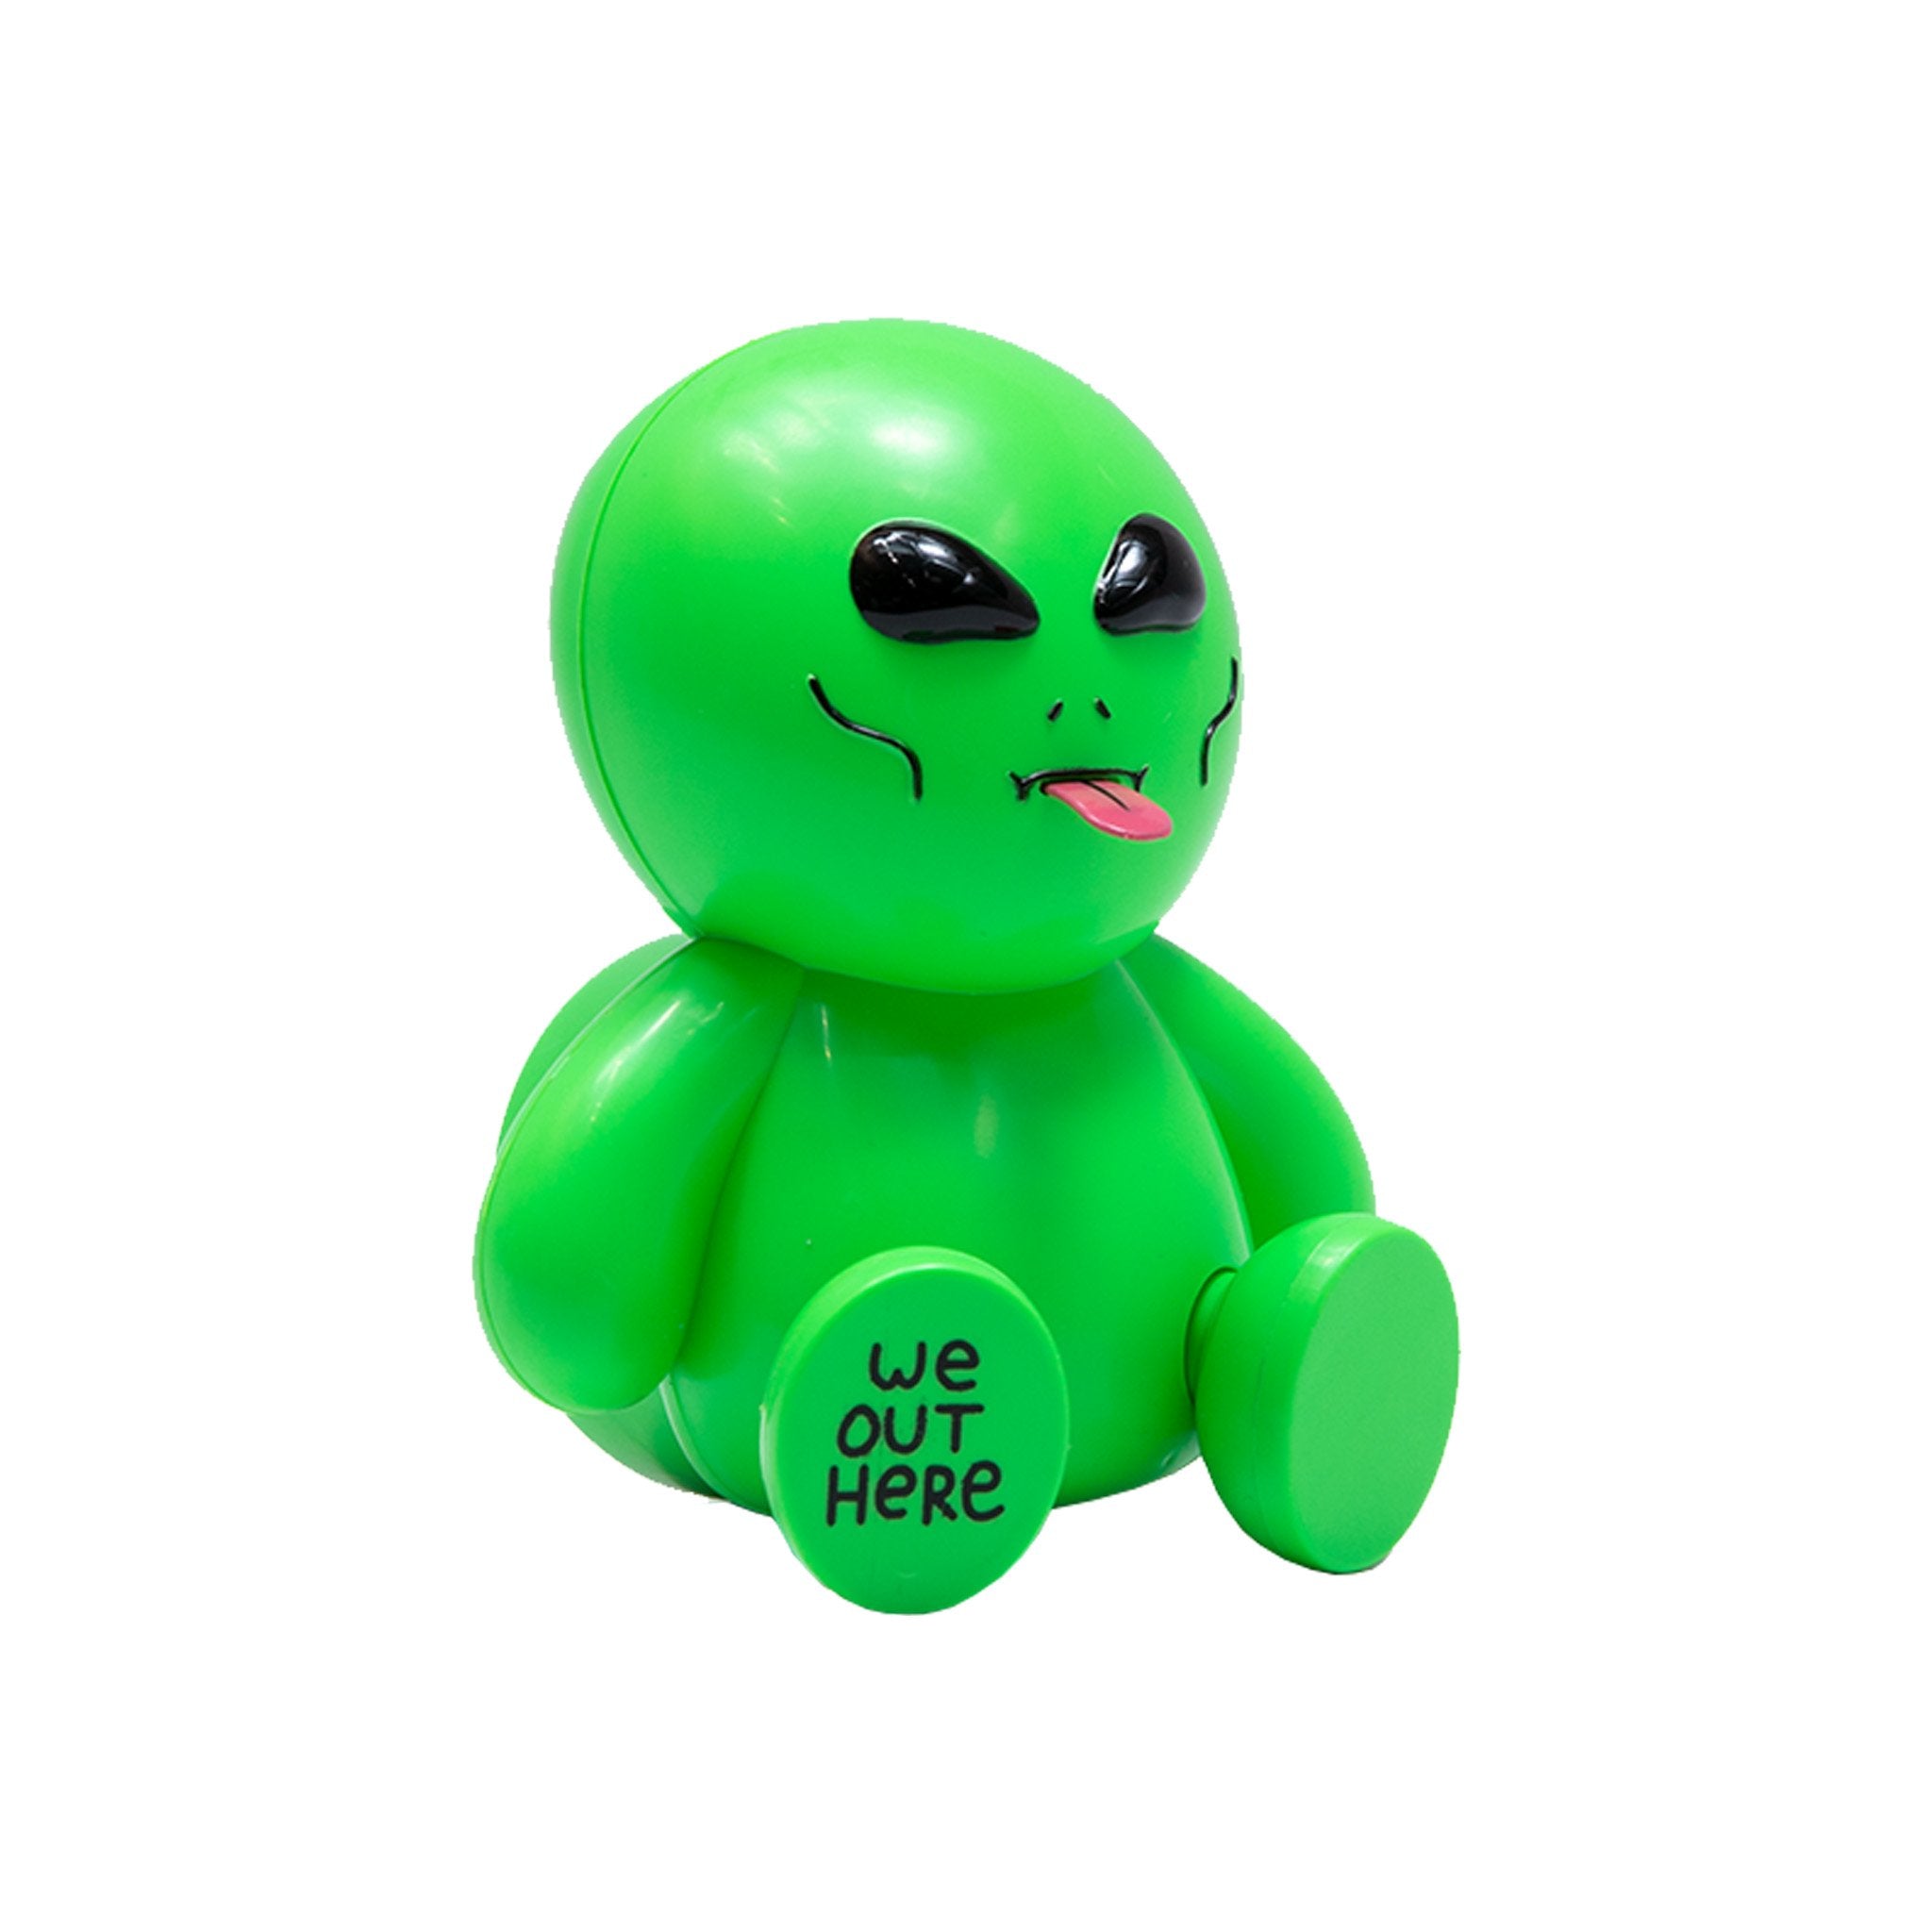 Lord Alien Skate Wax (Green)